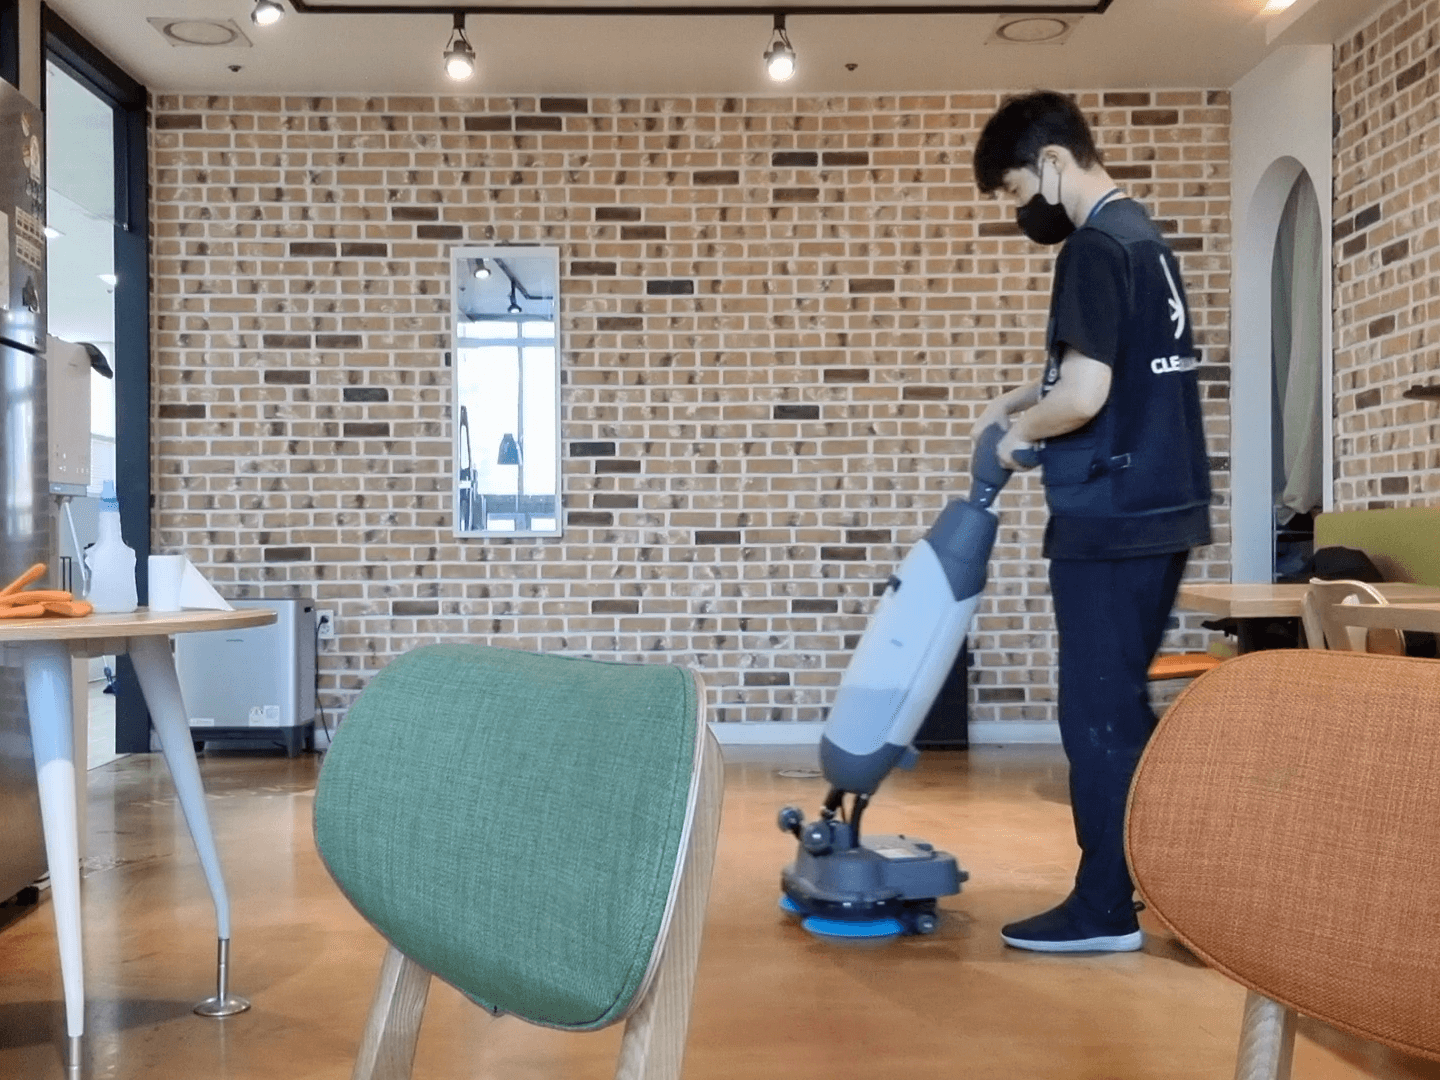 올바른 바닥 청소 방법으로 청소하는 전문가